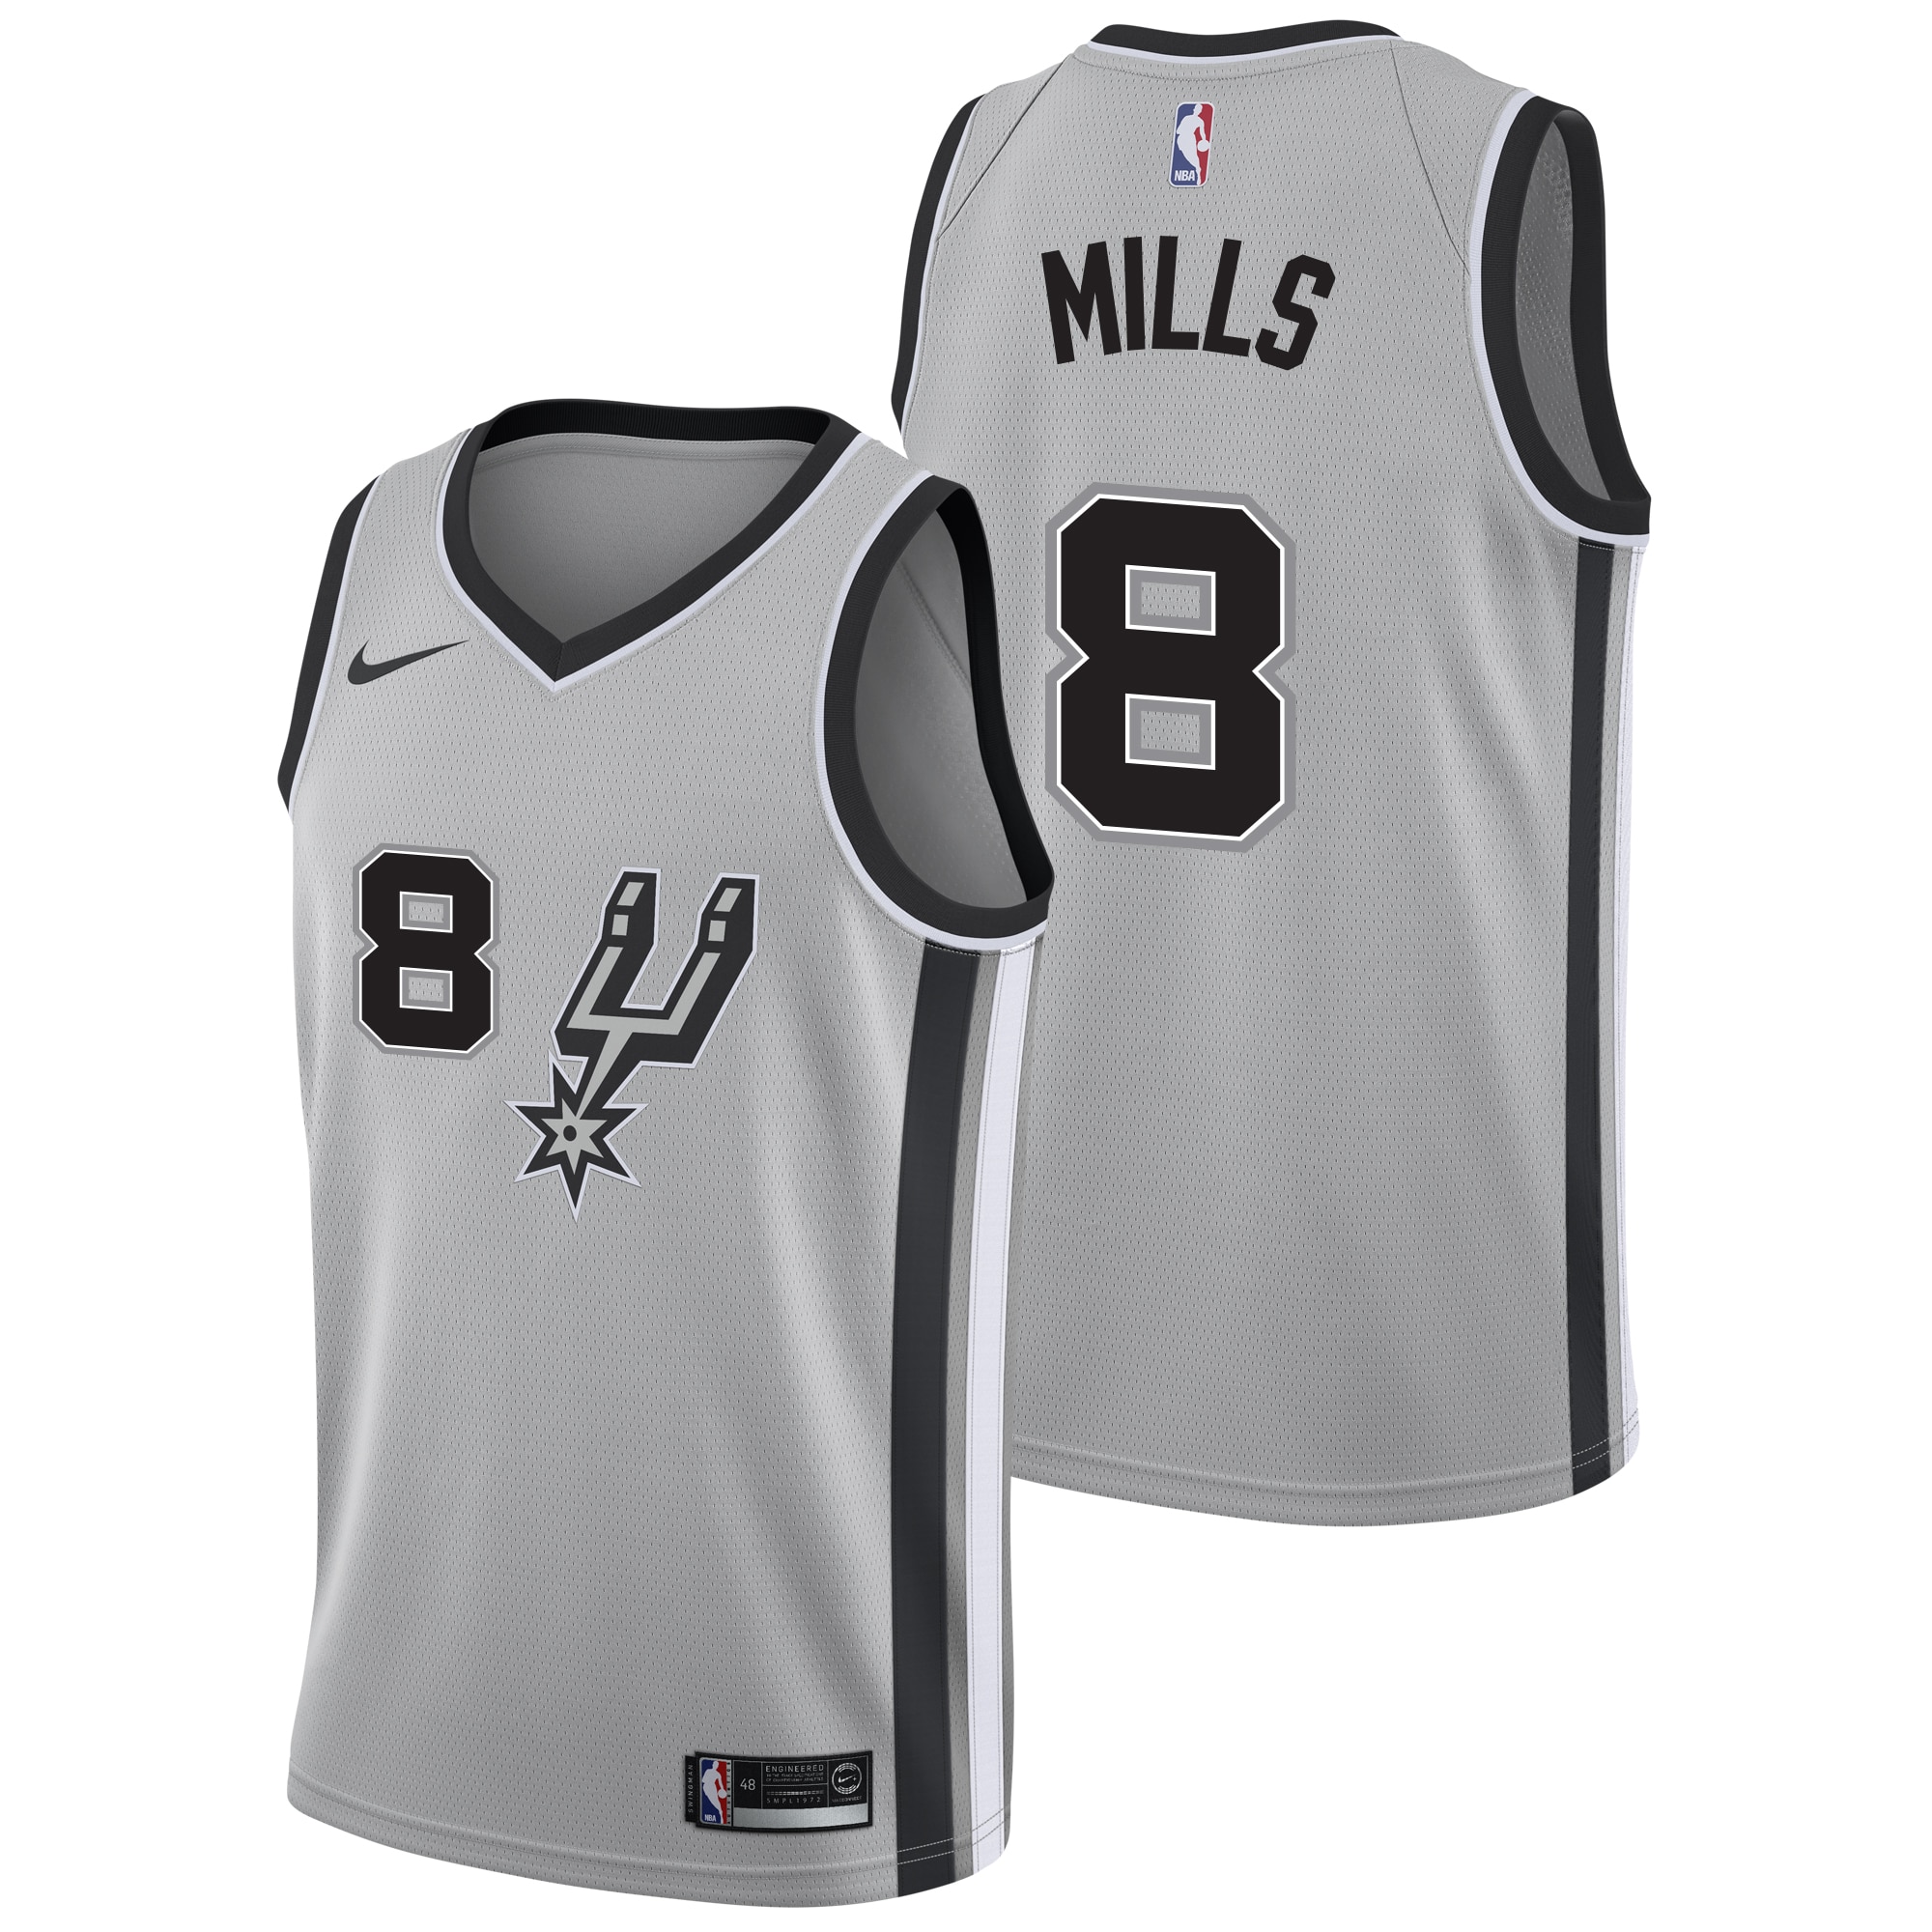 mills spurs jersey